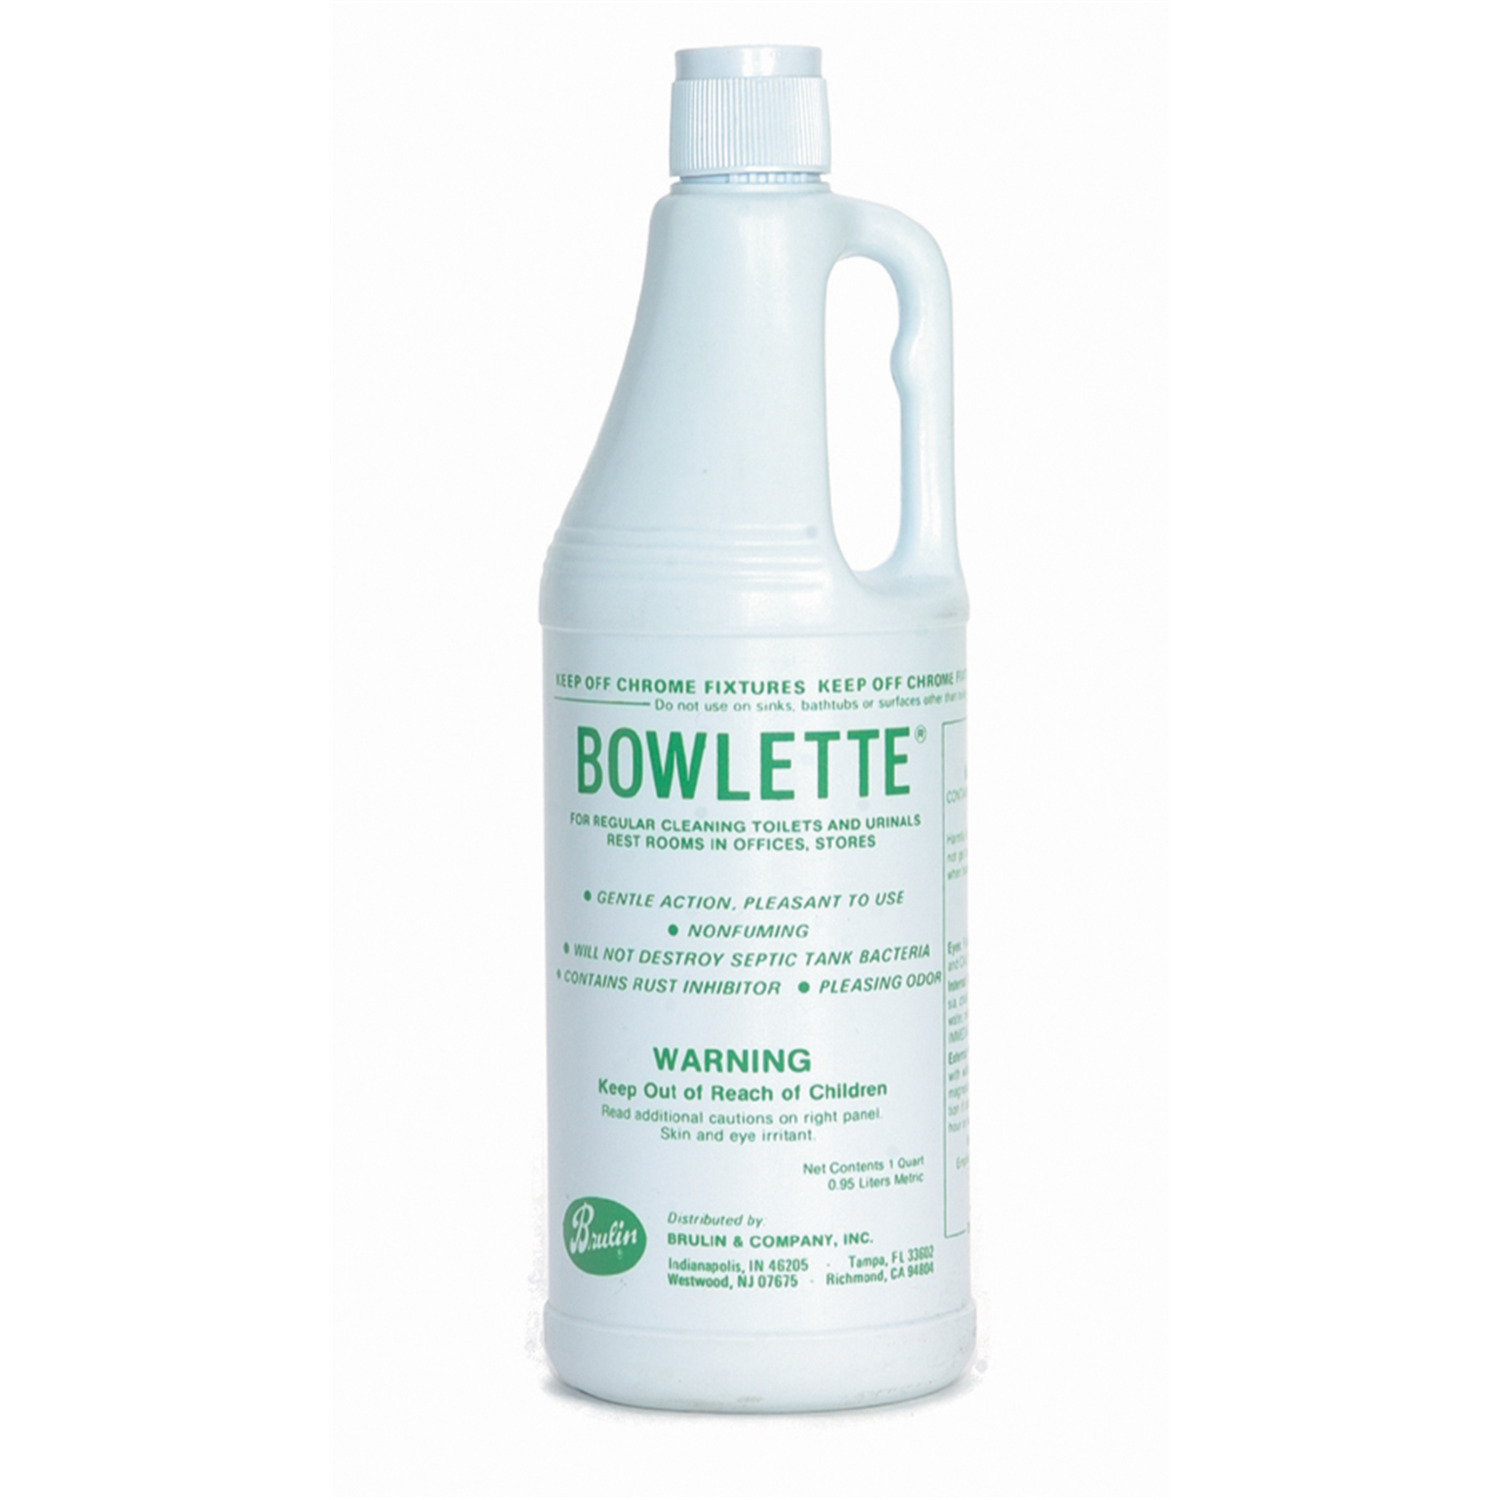 Medline Bowlette Toilet Cleaner